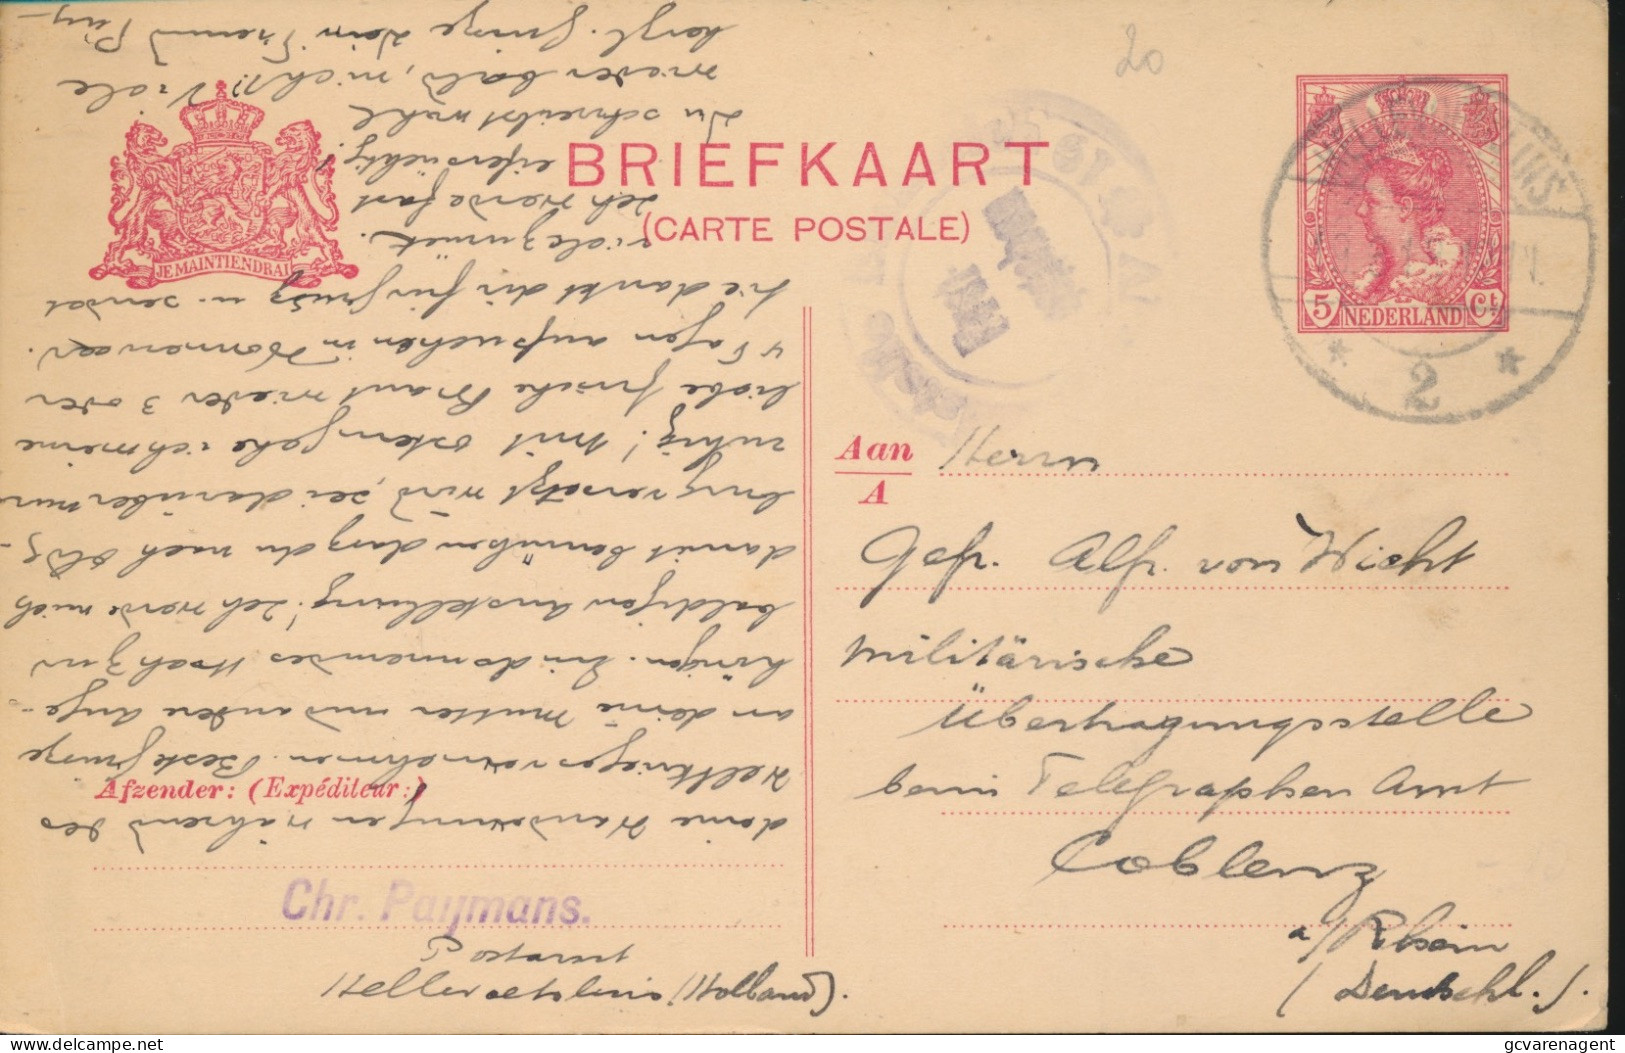 BRIEFKAART 1918 AUSLANDSTELLE FREIGEGEBEN  NAAR MILITAIRISCHE UBERWACHSTELLE  COBLENZ - Lettres & Documents